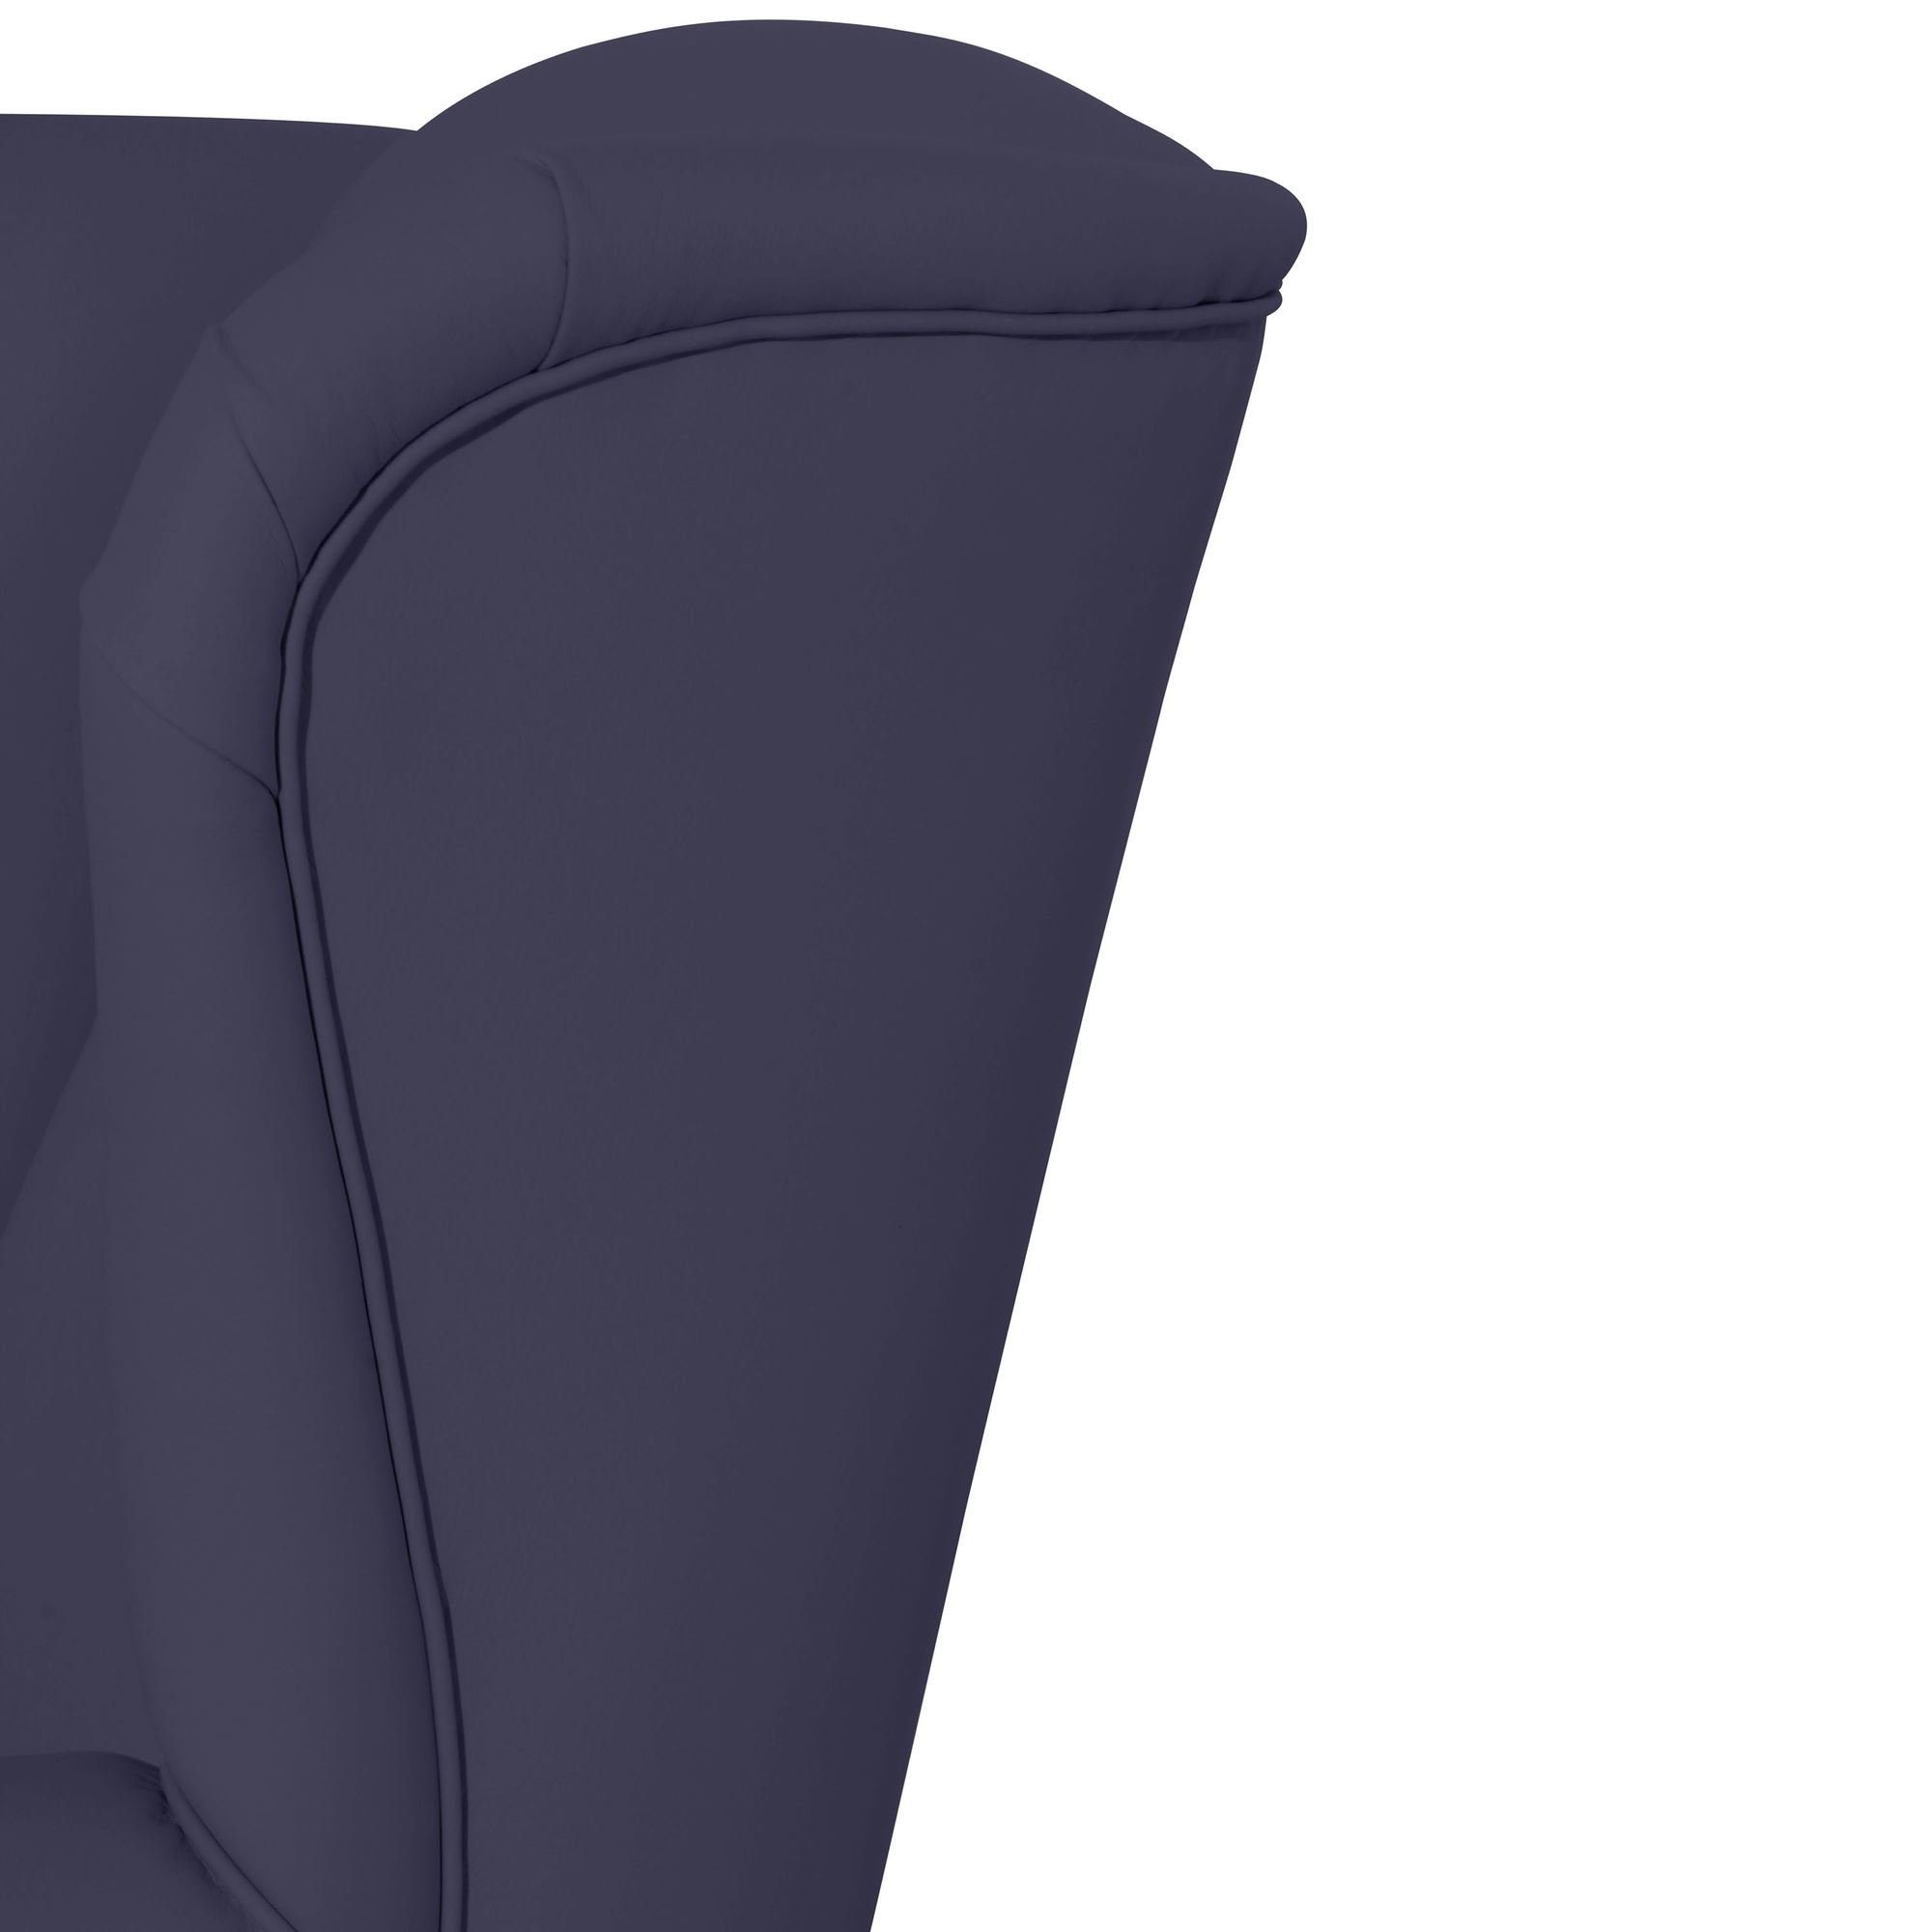 1-St), natur 58 dunkelblau Buche Sitz (Sparpreis Kessel inkl. Kunstleder Kasha Ohrensessel aufm Versand, hochwertig Kostenlosem Bezug Ohrenbackensessel / verarbeitet,bequemer